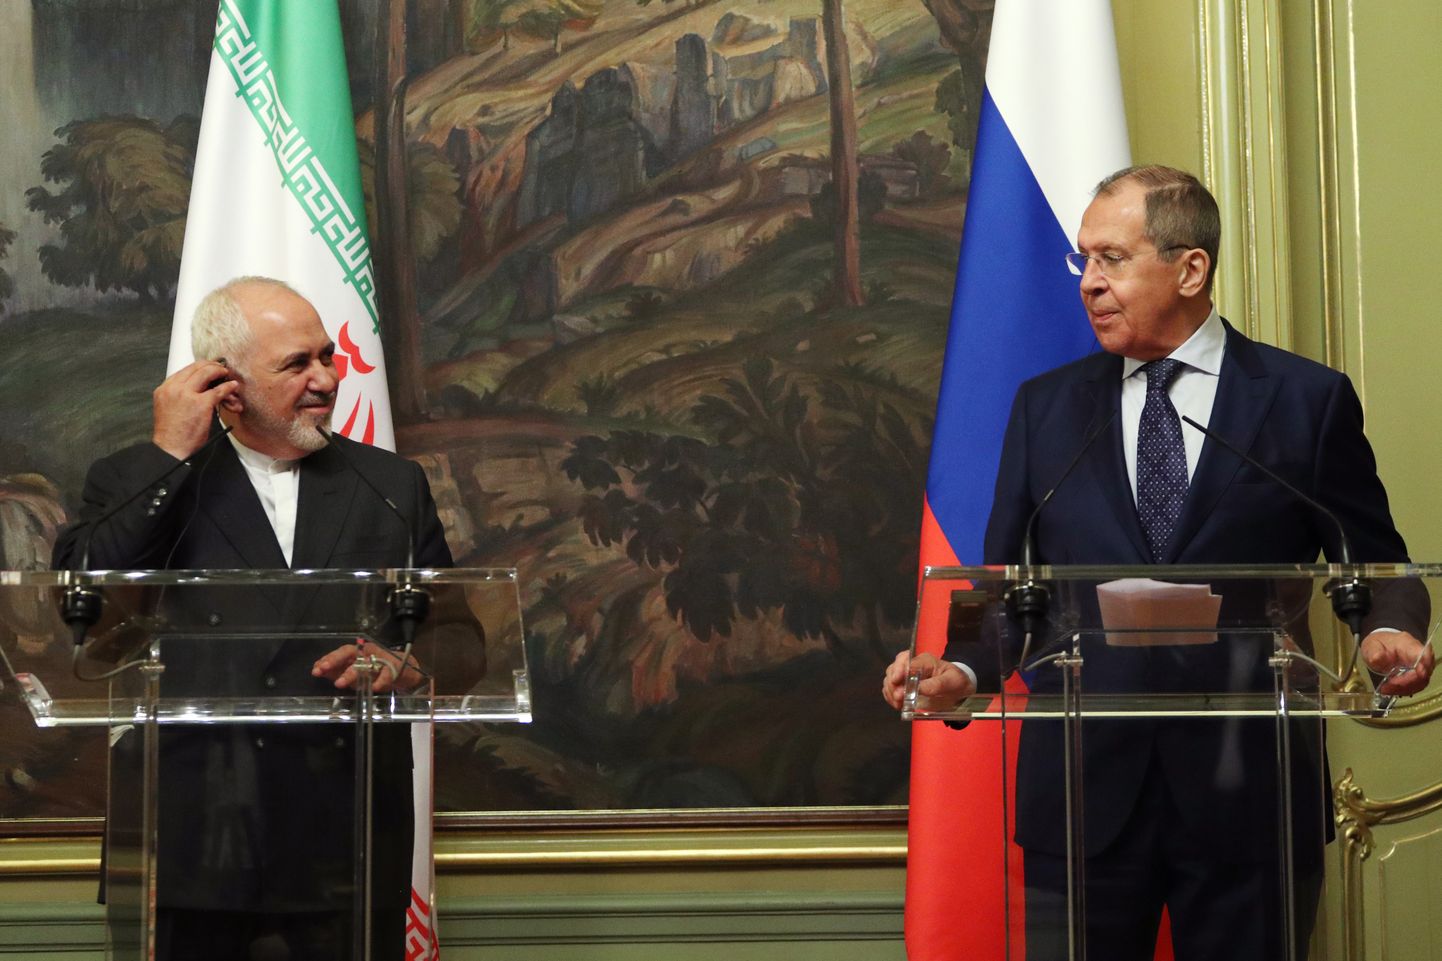 Iraani välisminister Javad Zarif (vasakul) ja Vene välisminister Sergei Lavrov Moskva 16. juuni 2020.